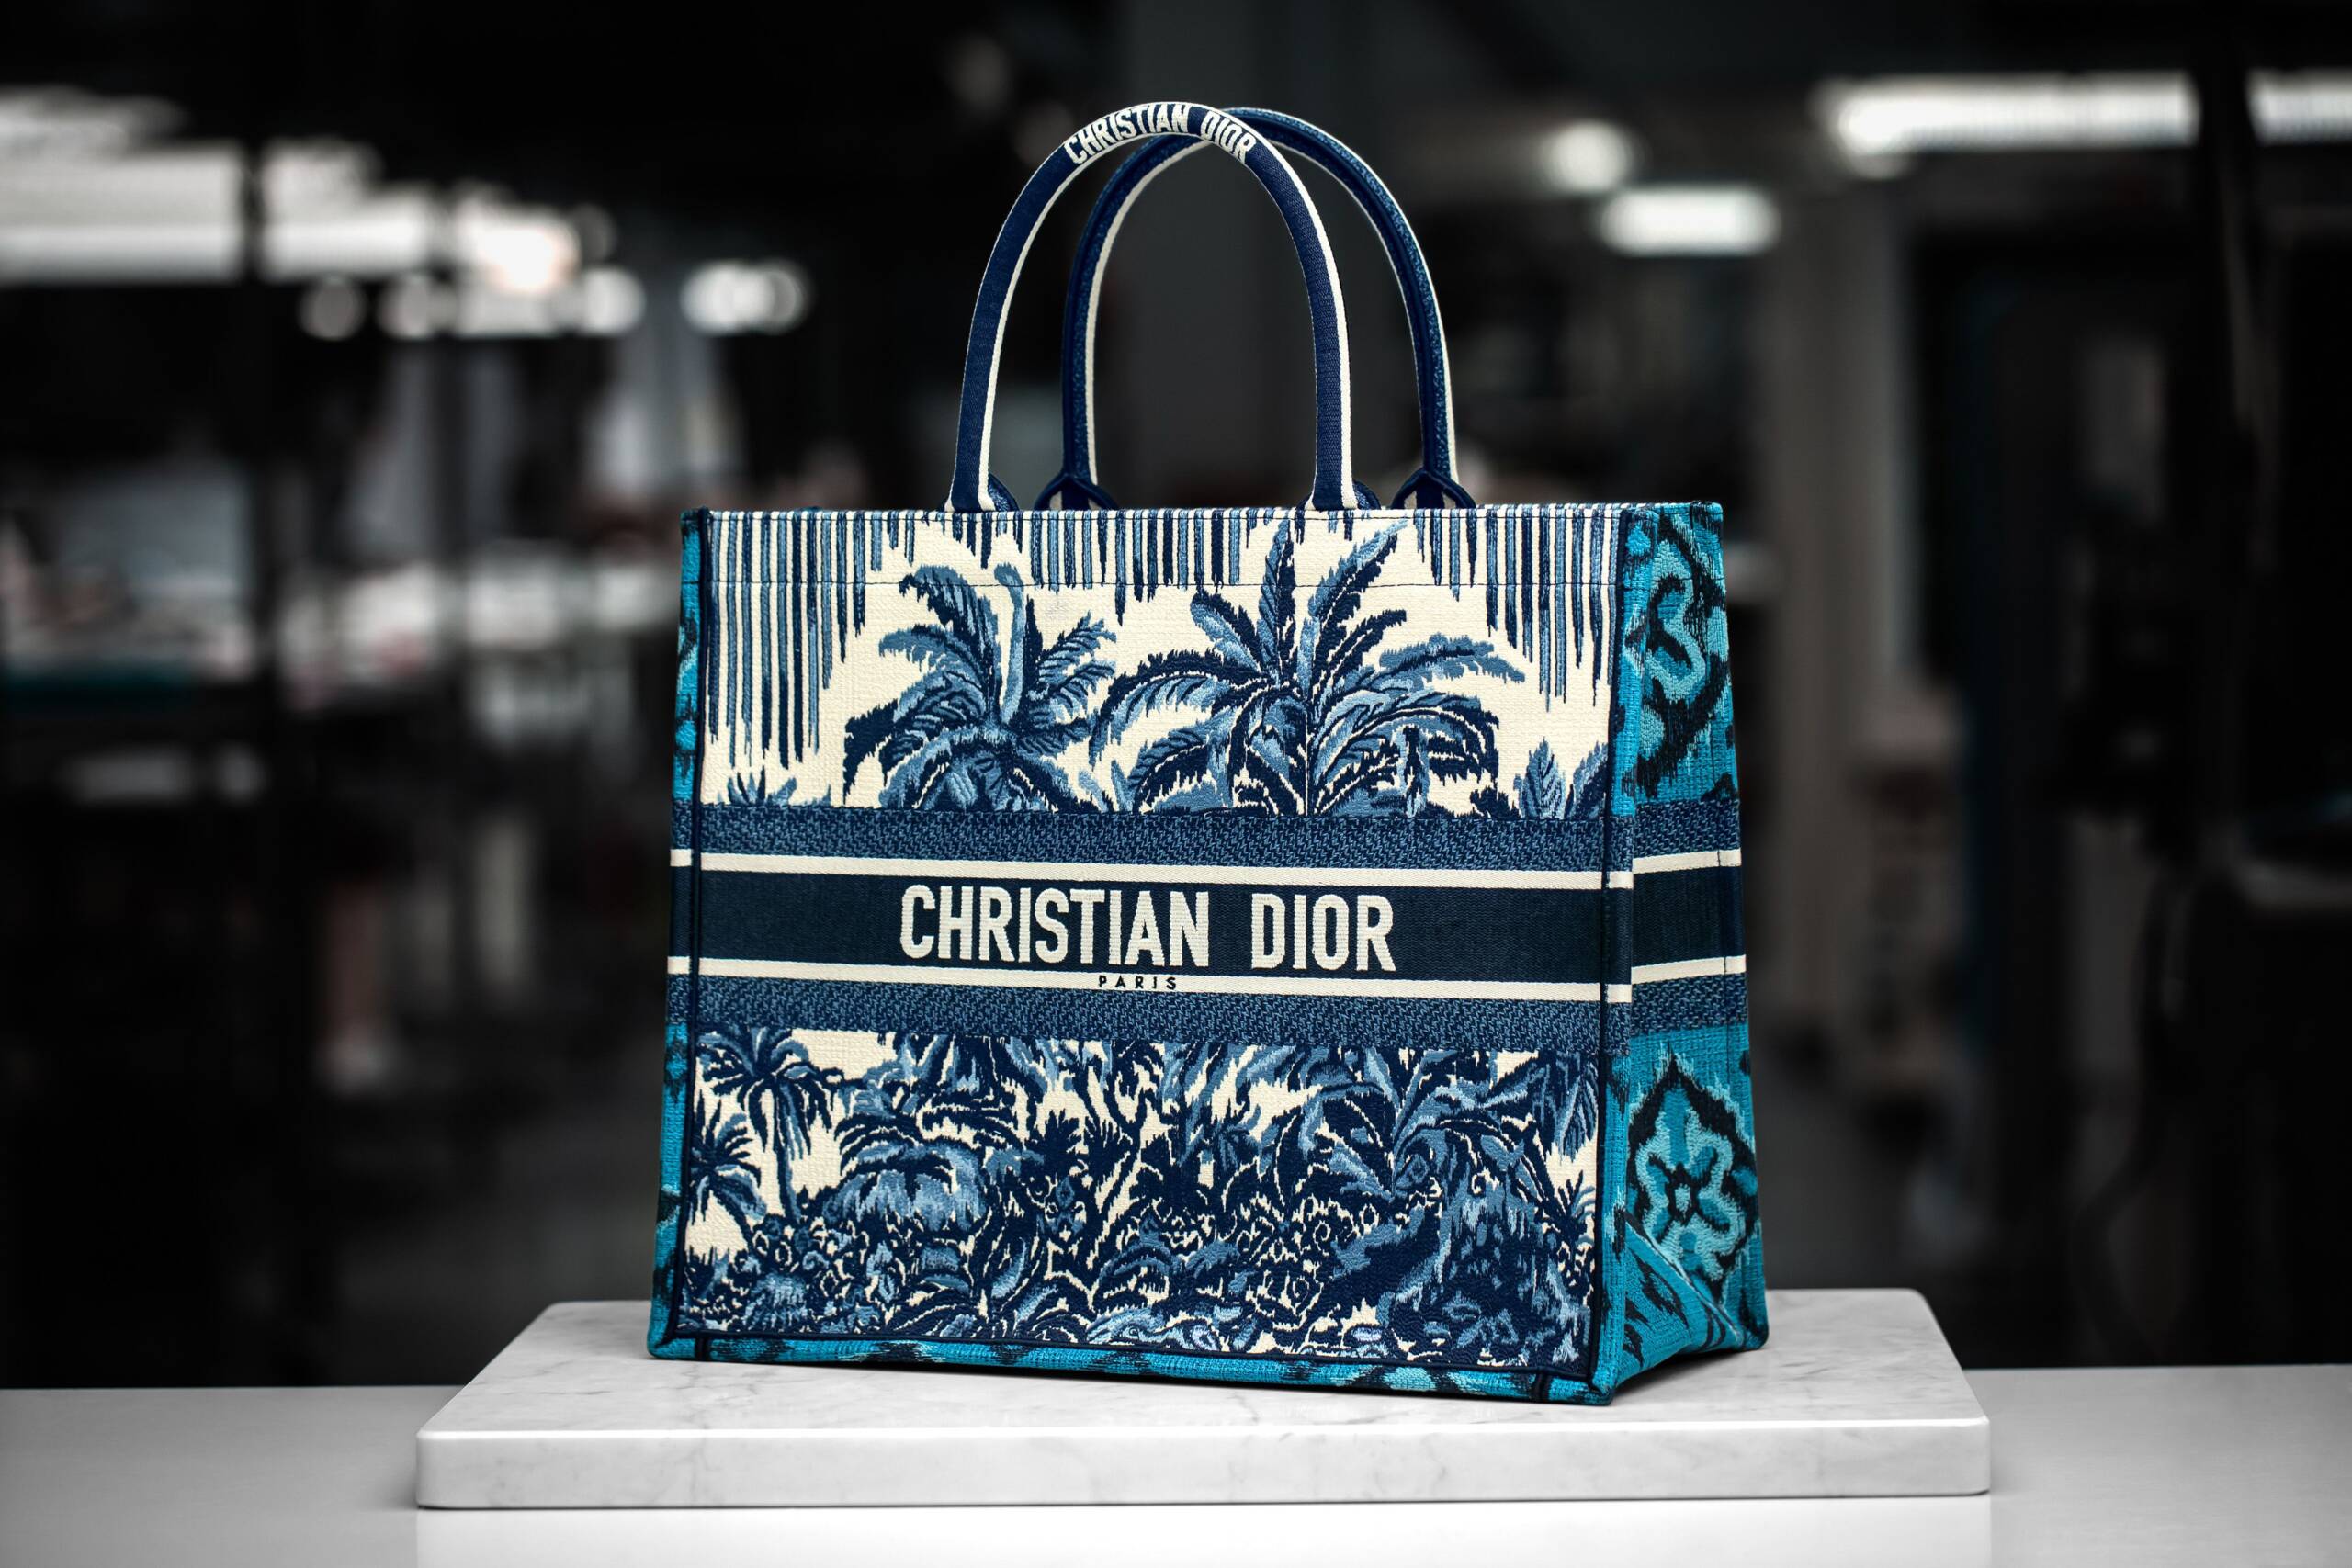 Christian Dior Beach Tote Book Bag